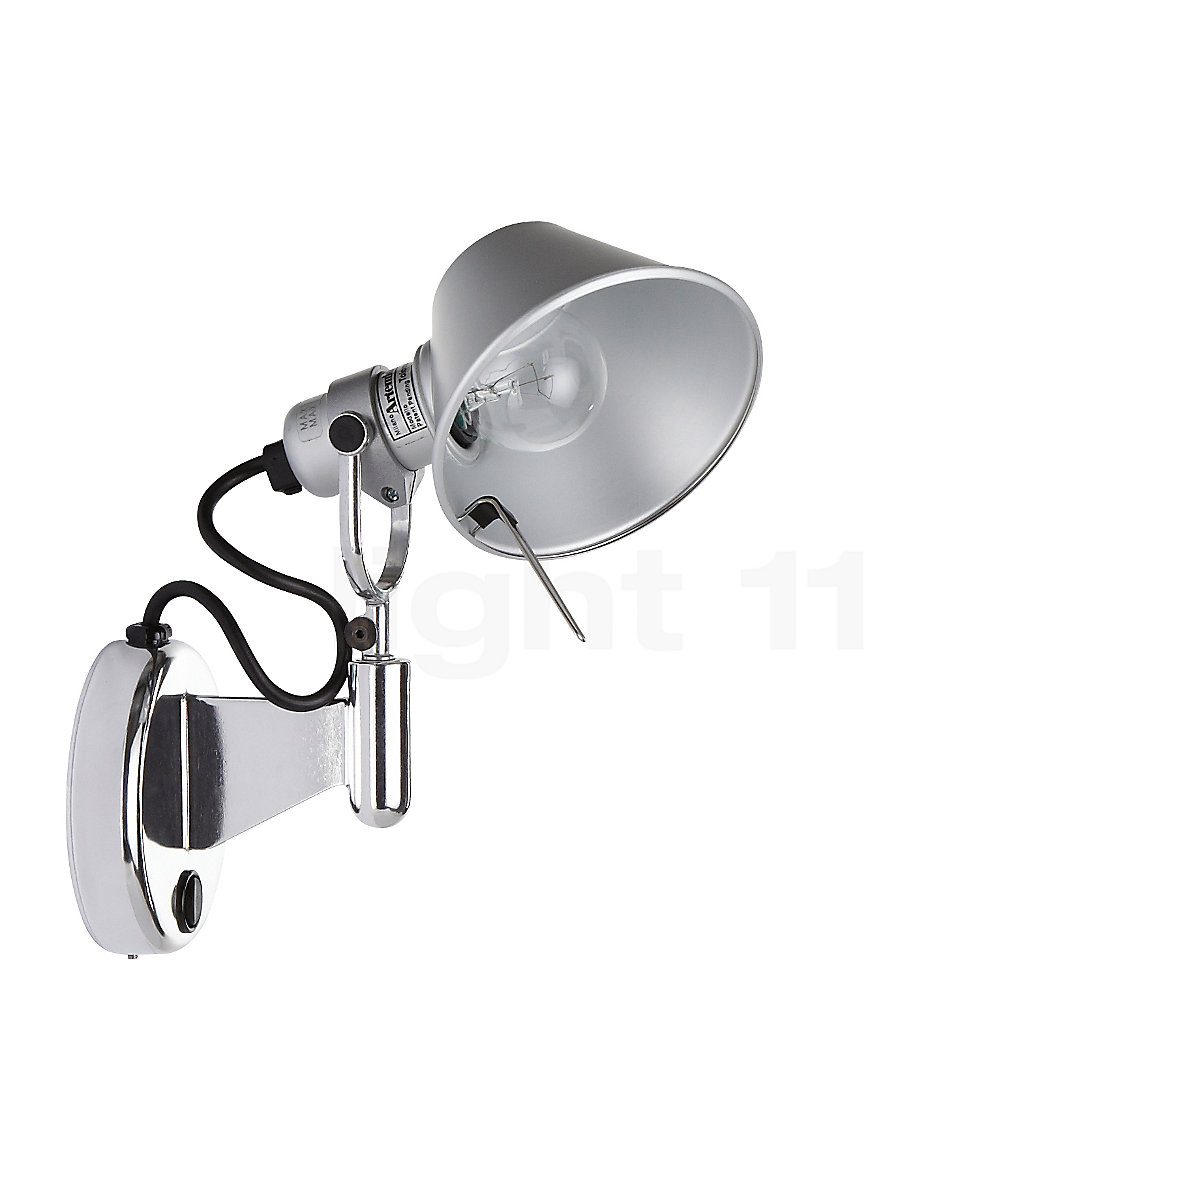 Artemide Lampada Tolomeo Micro Faretto LED parete Artemide a 204,01 €  vendita online al miglior prezzo - LampCommerce